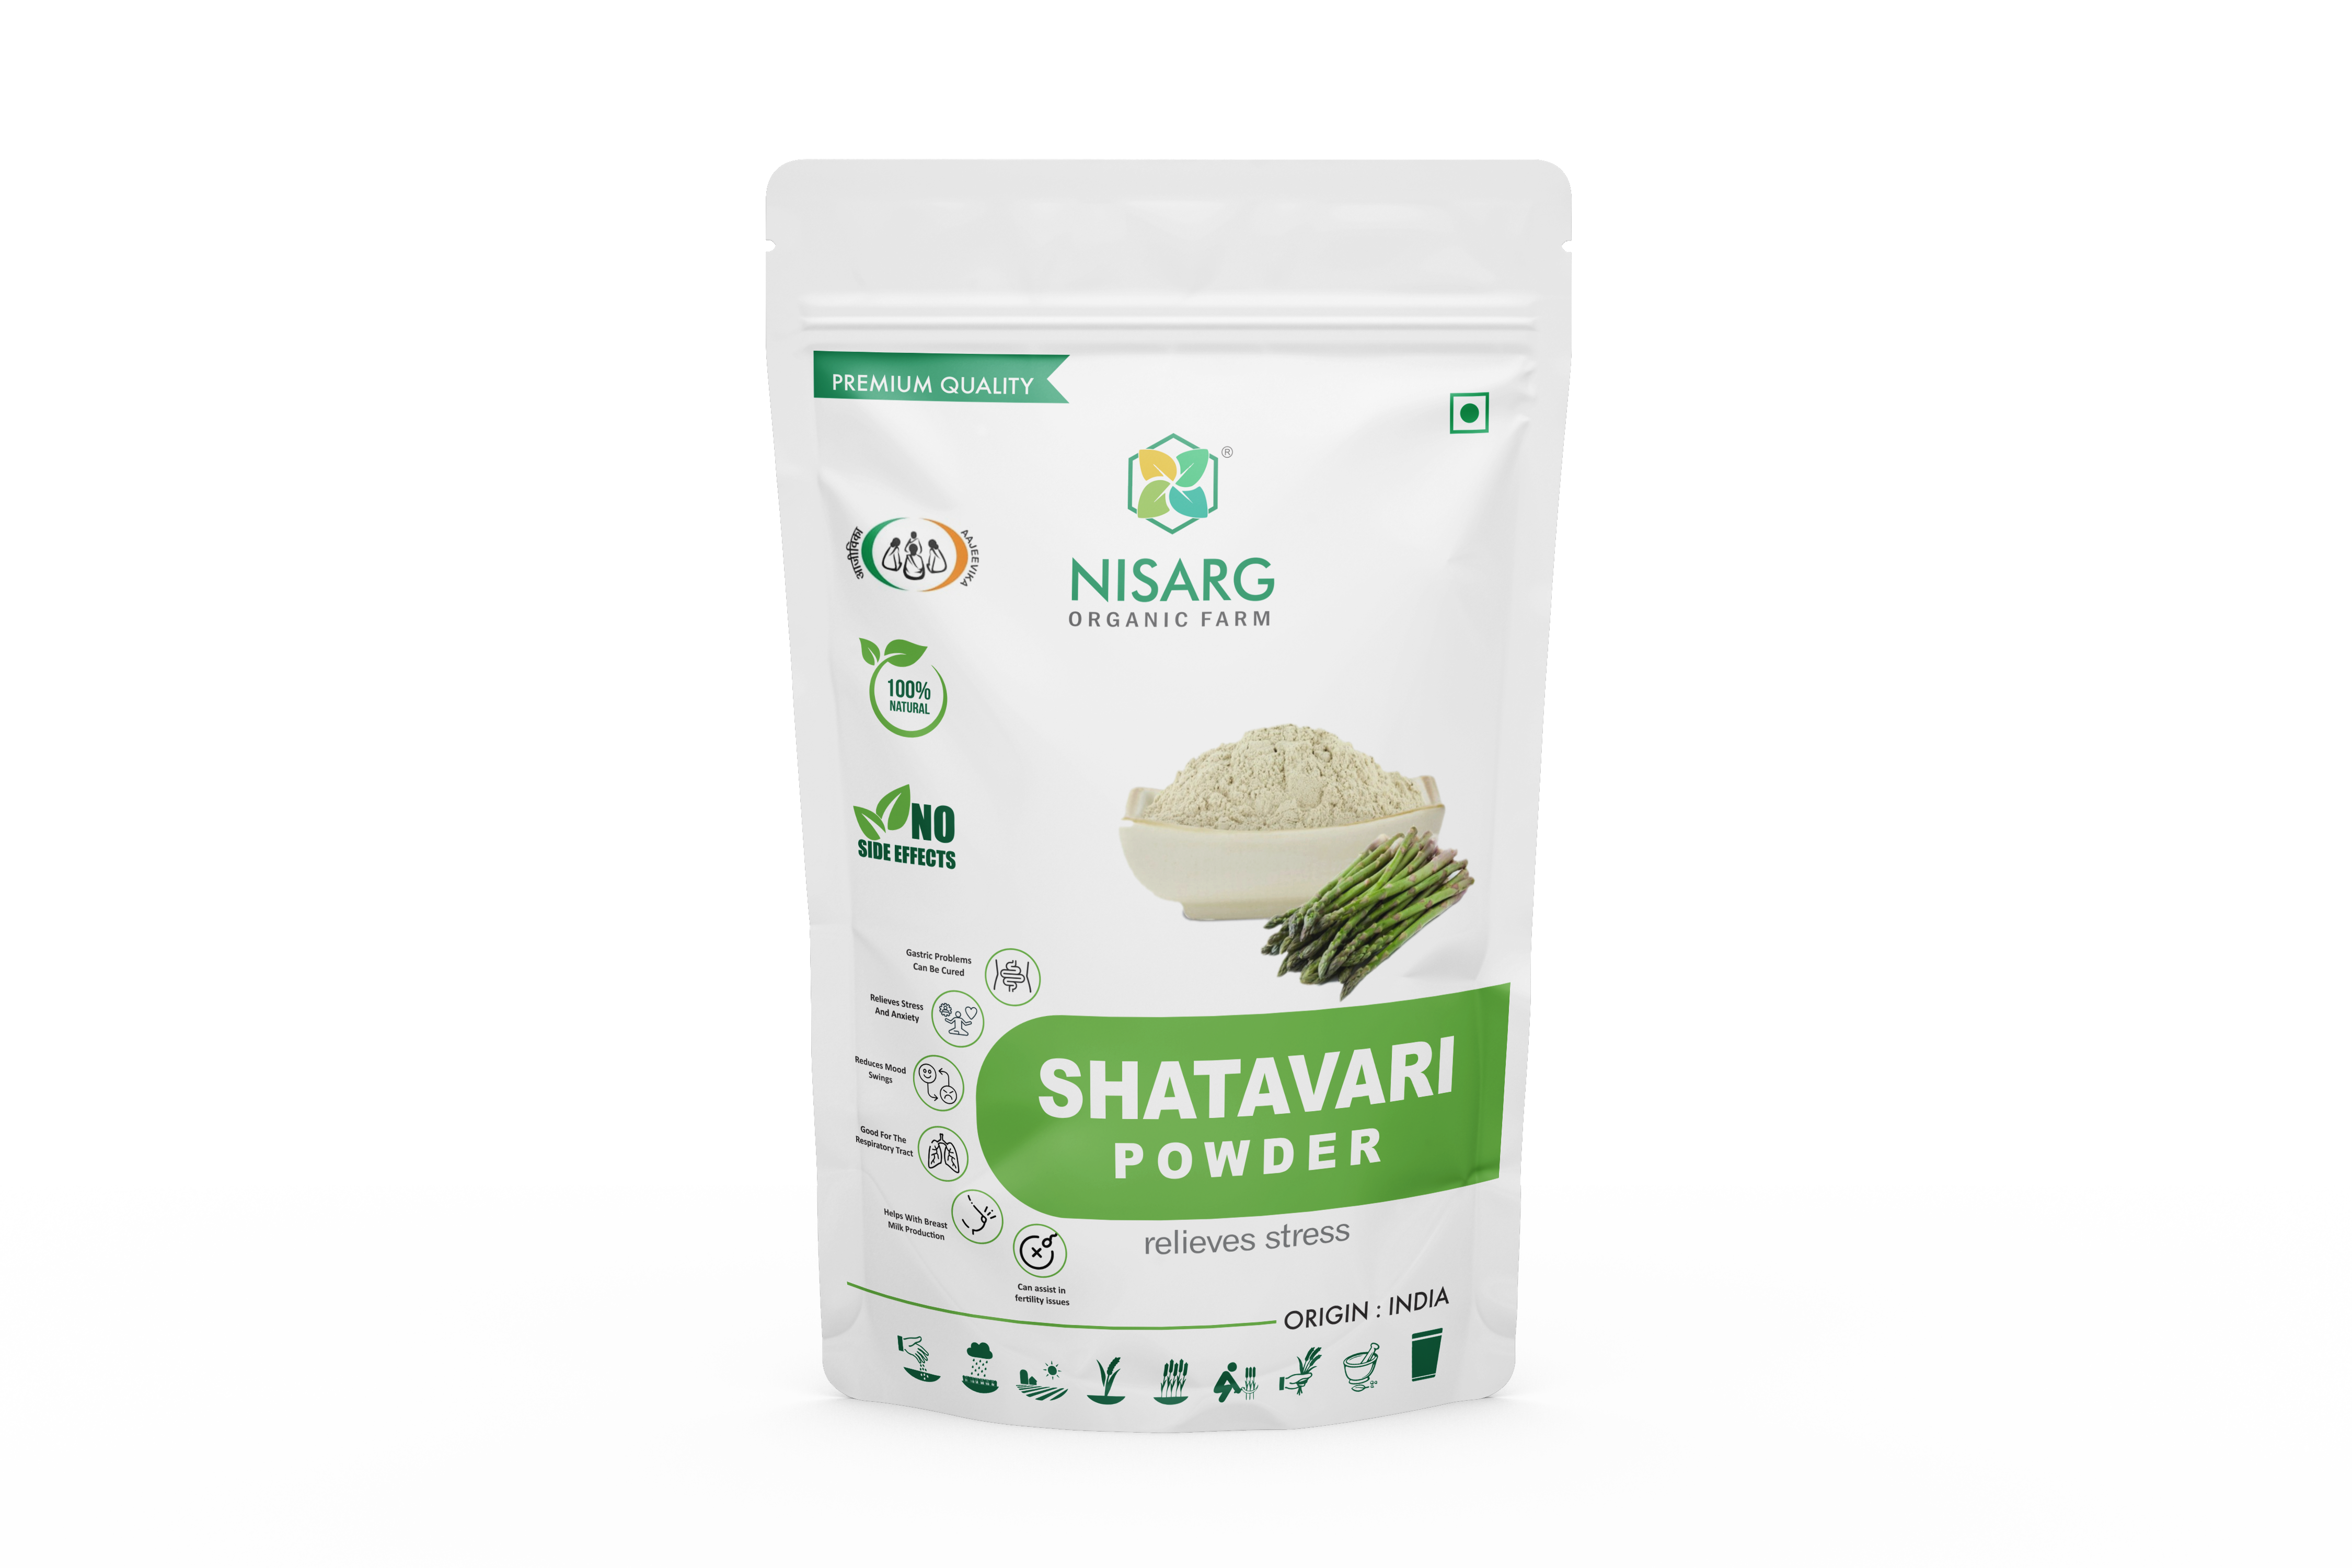 Product: Nisarg Shatavari Root Powder